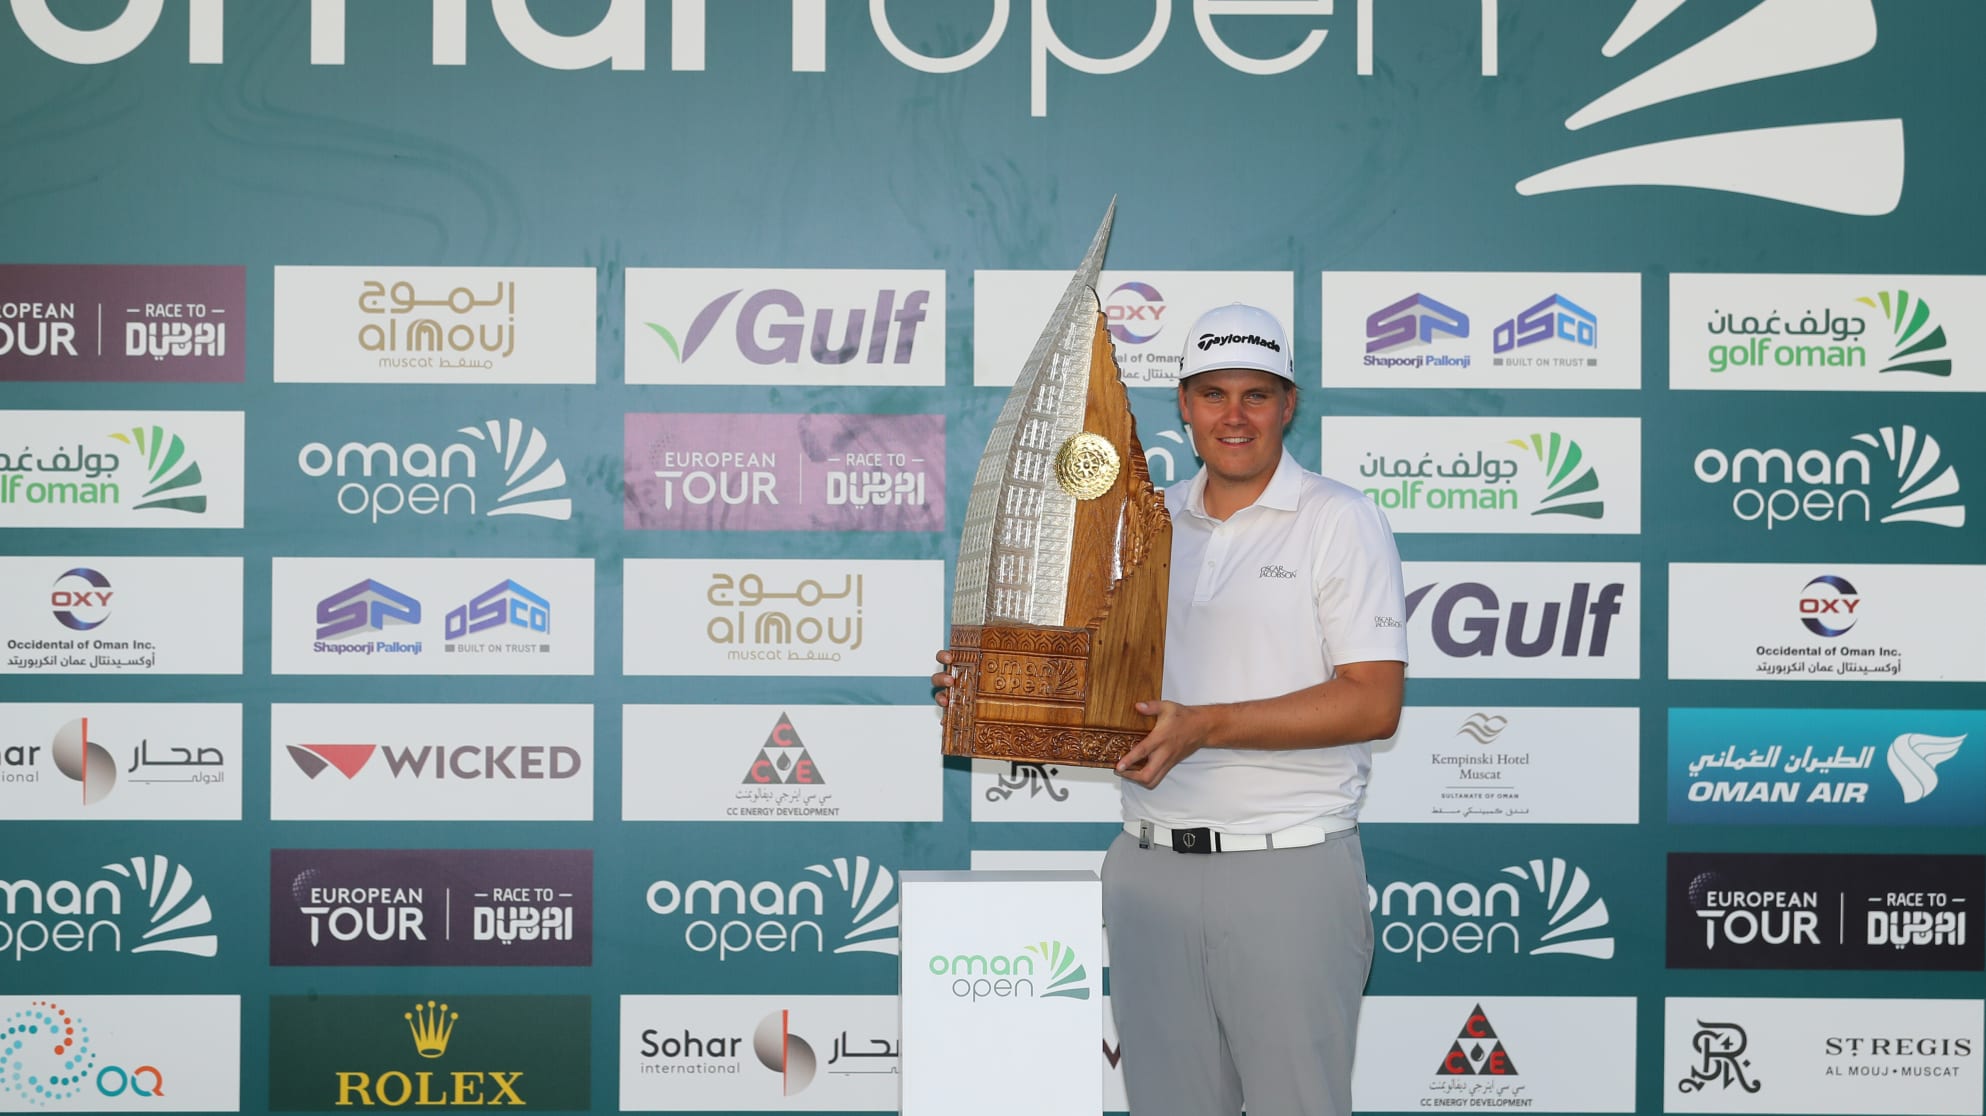 Oman Open 2020: Sami Valimaki có danh hiệu European Tour đầu tiên sau trận play off kịch tính